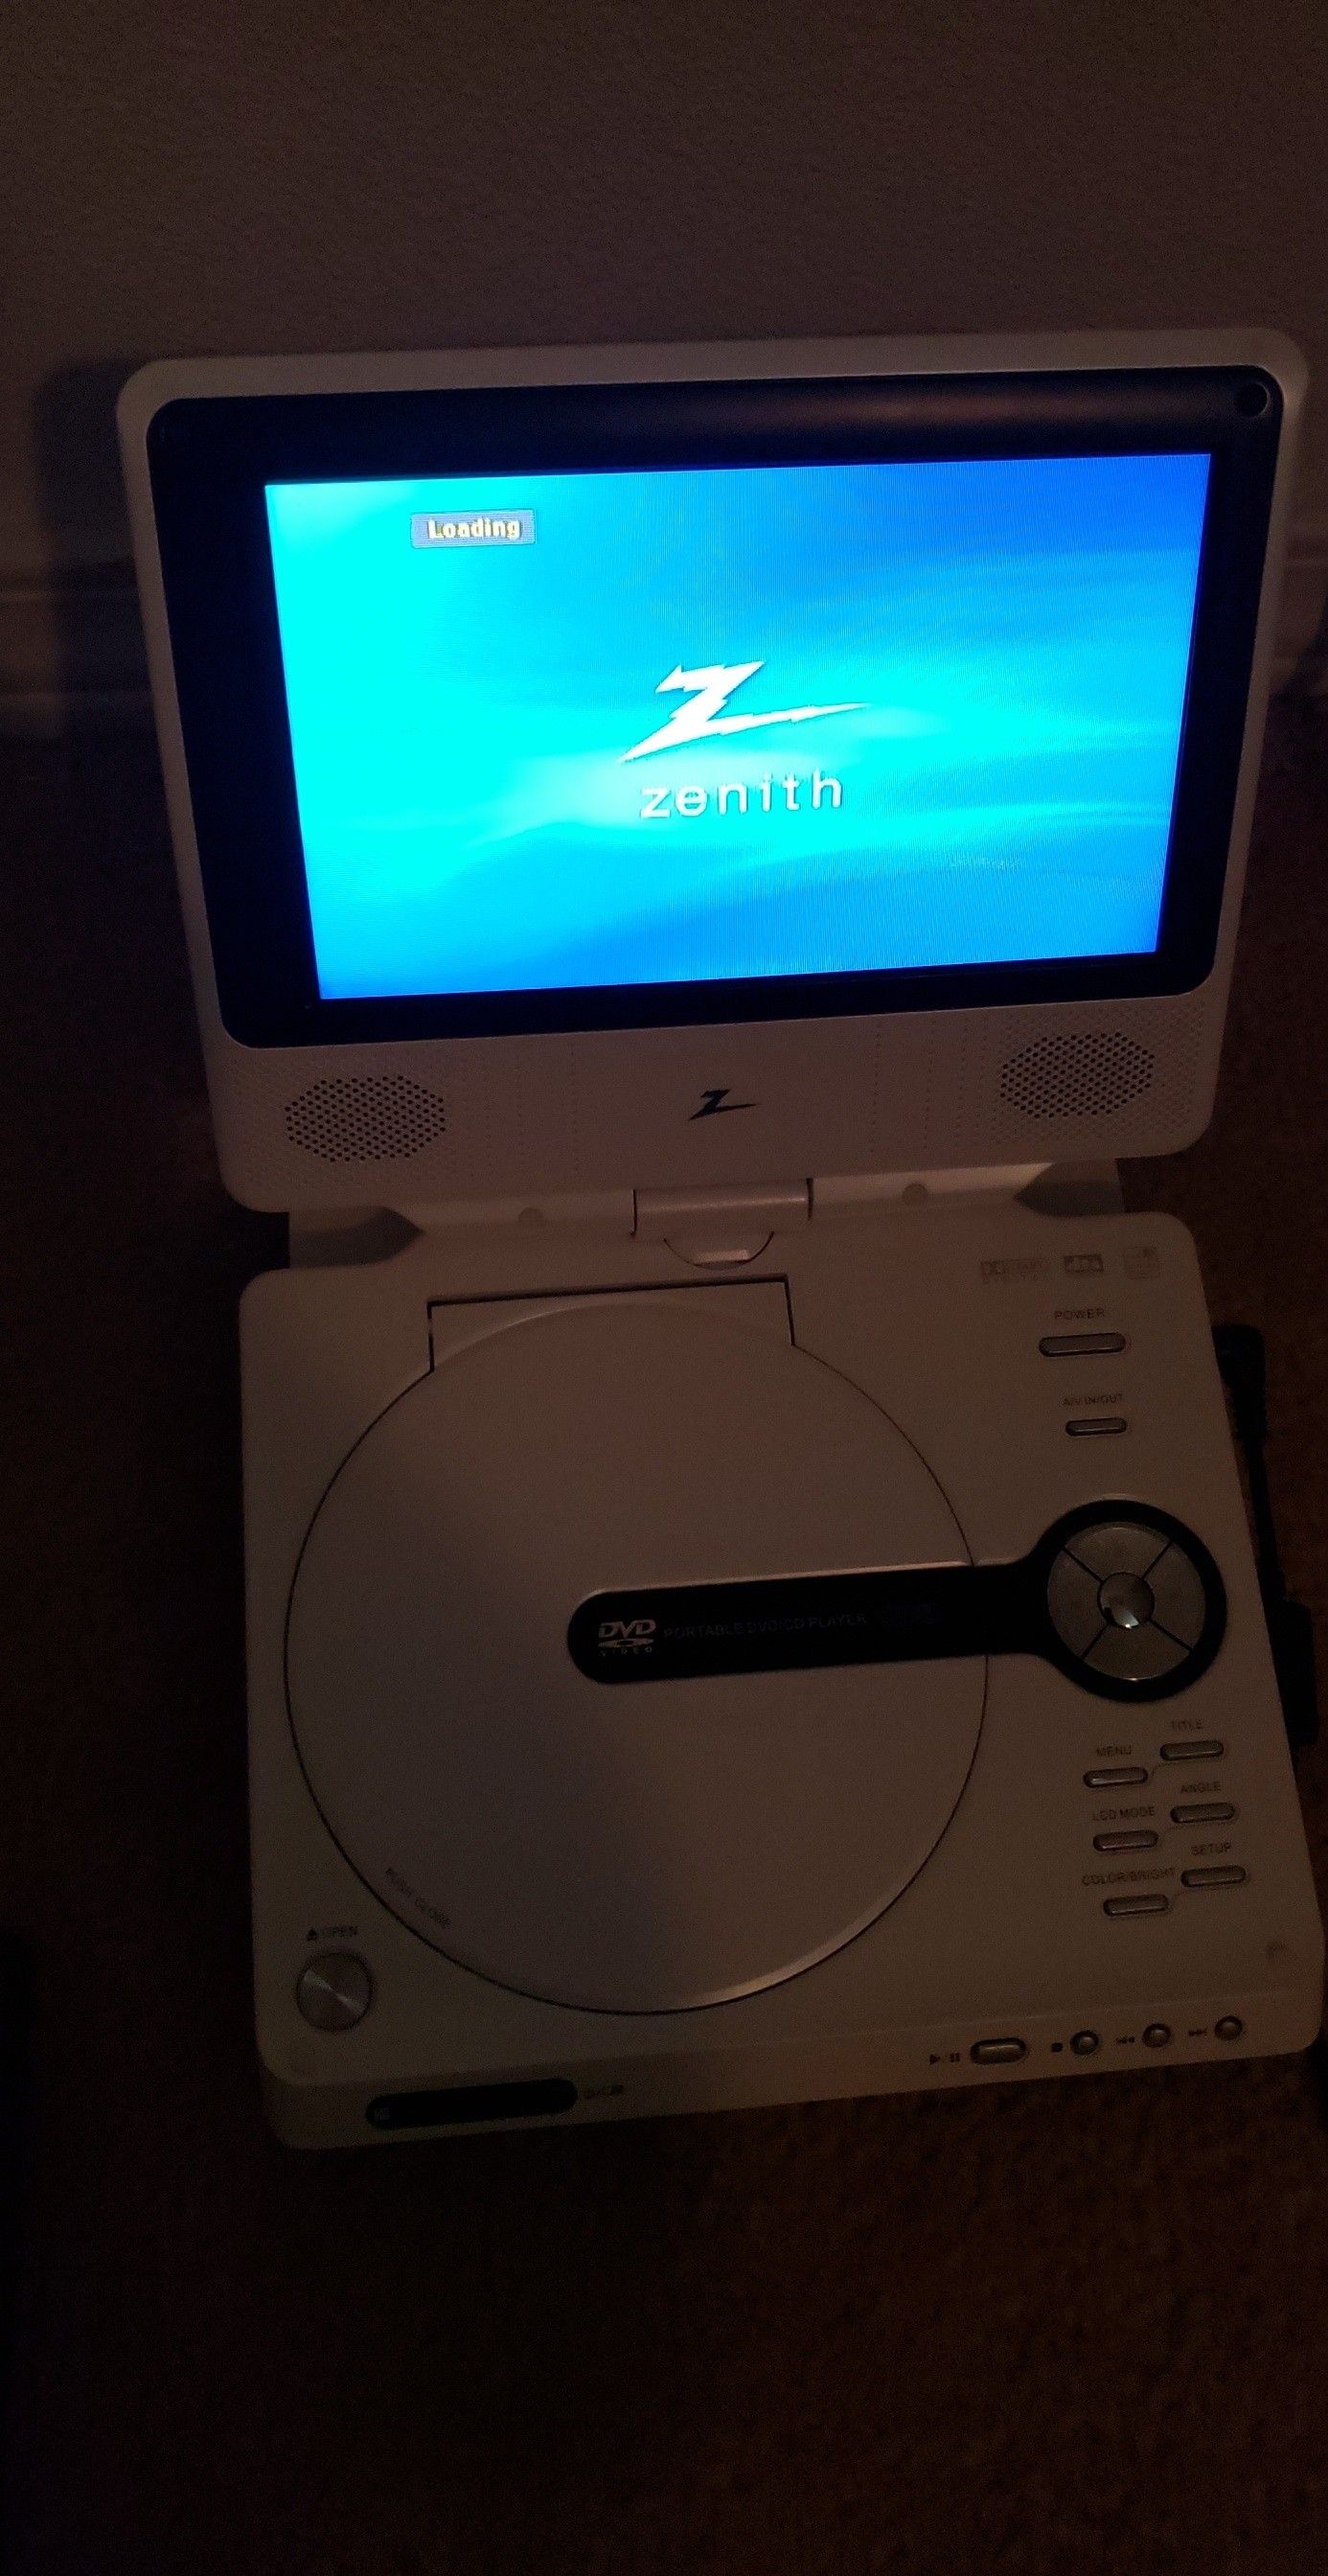 Zenith LCD portable DVD player (white)